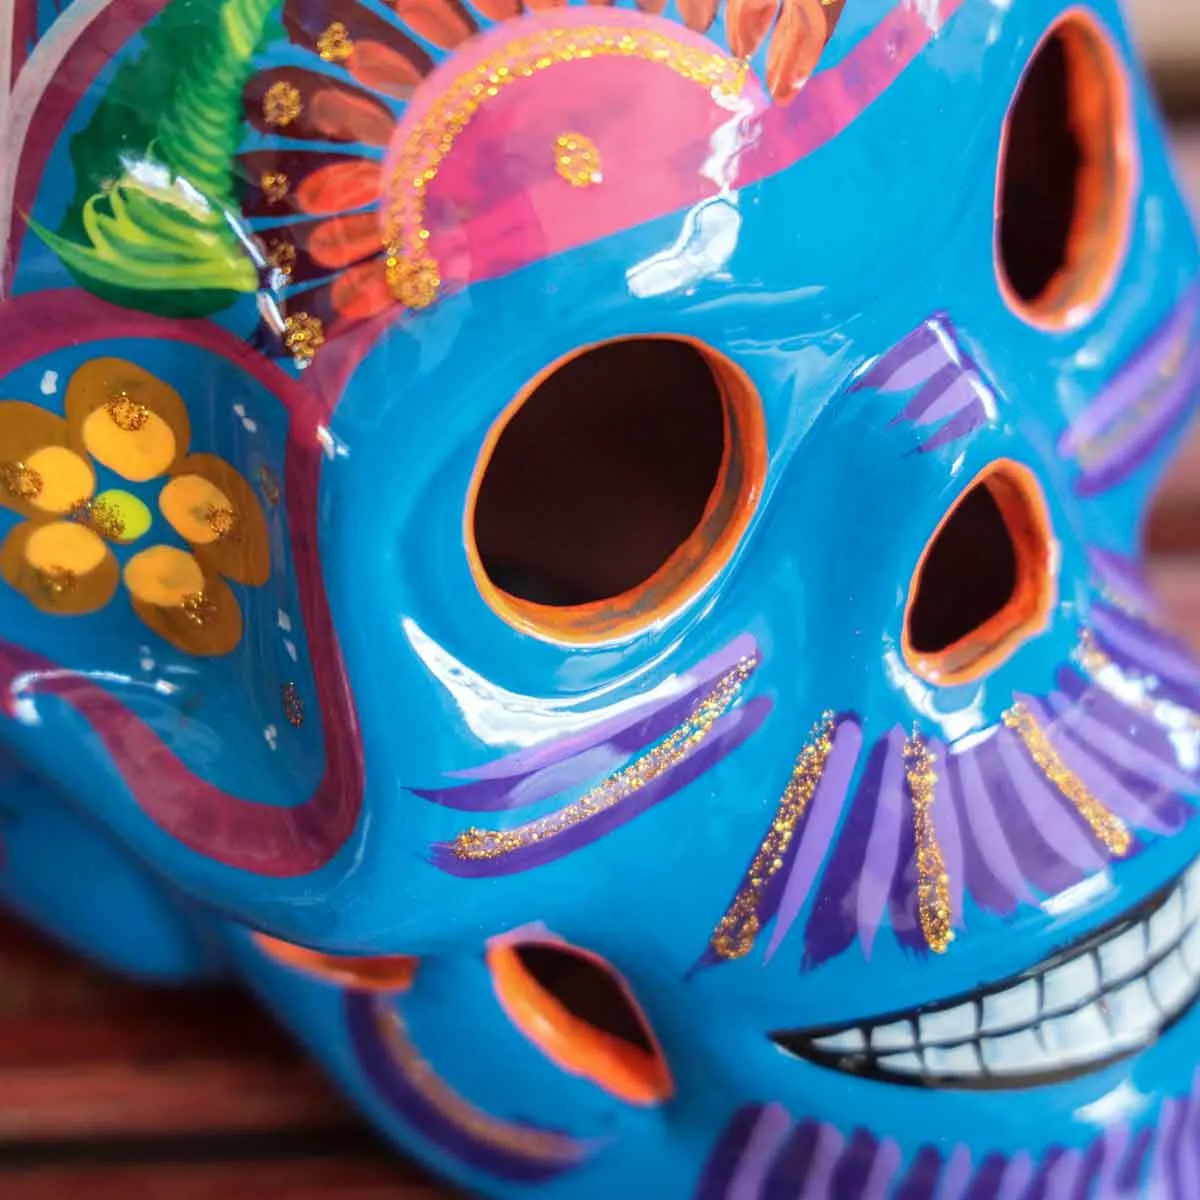 Choisissez votre tête de mort mexicaine colorée en céramique - Amadera